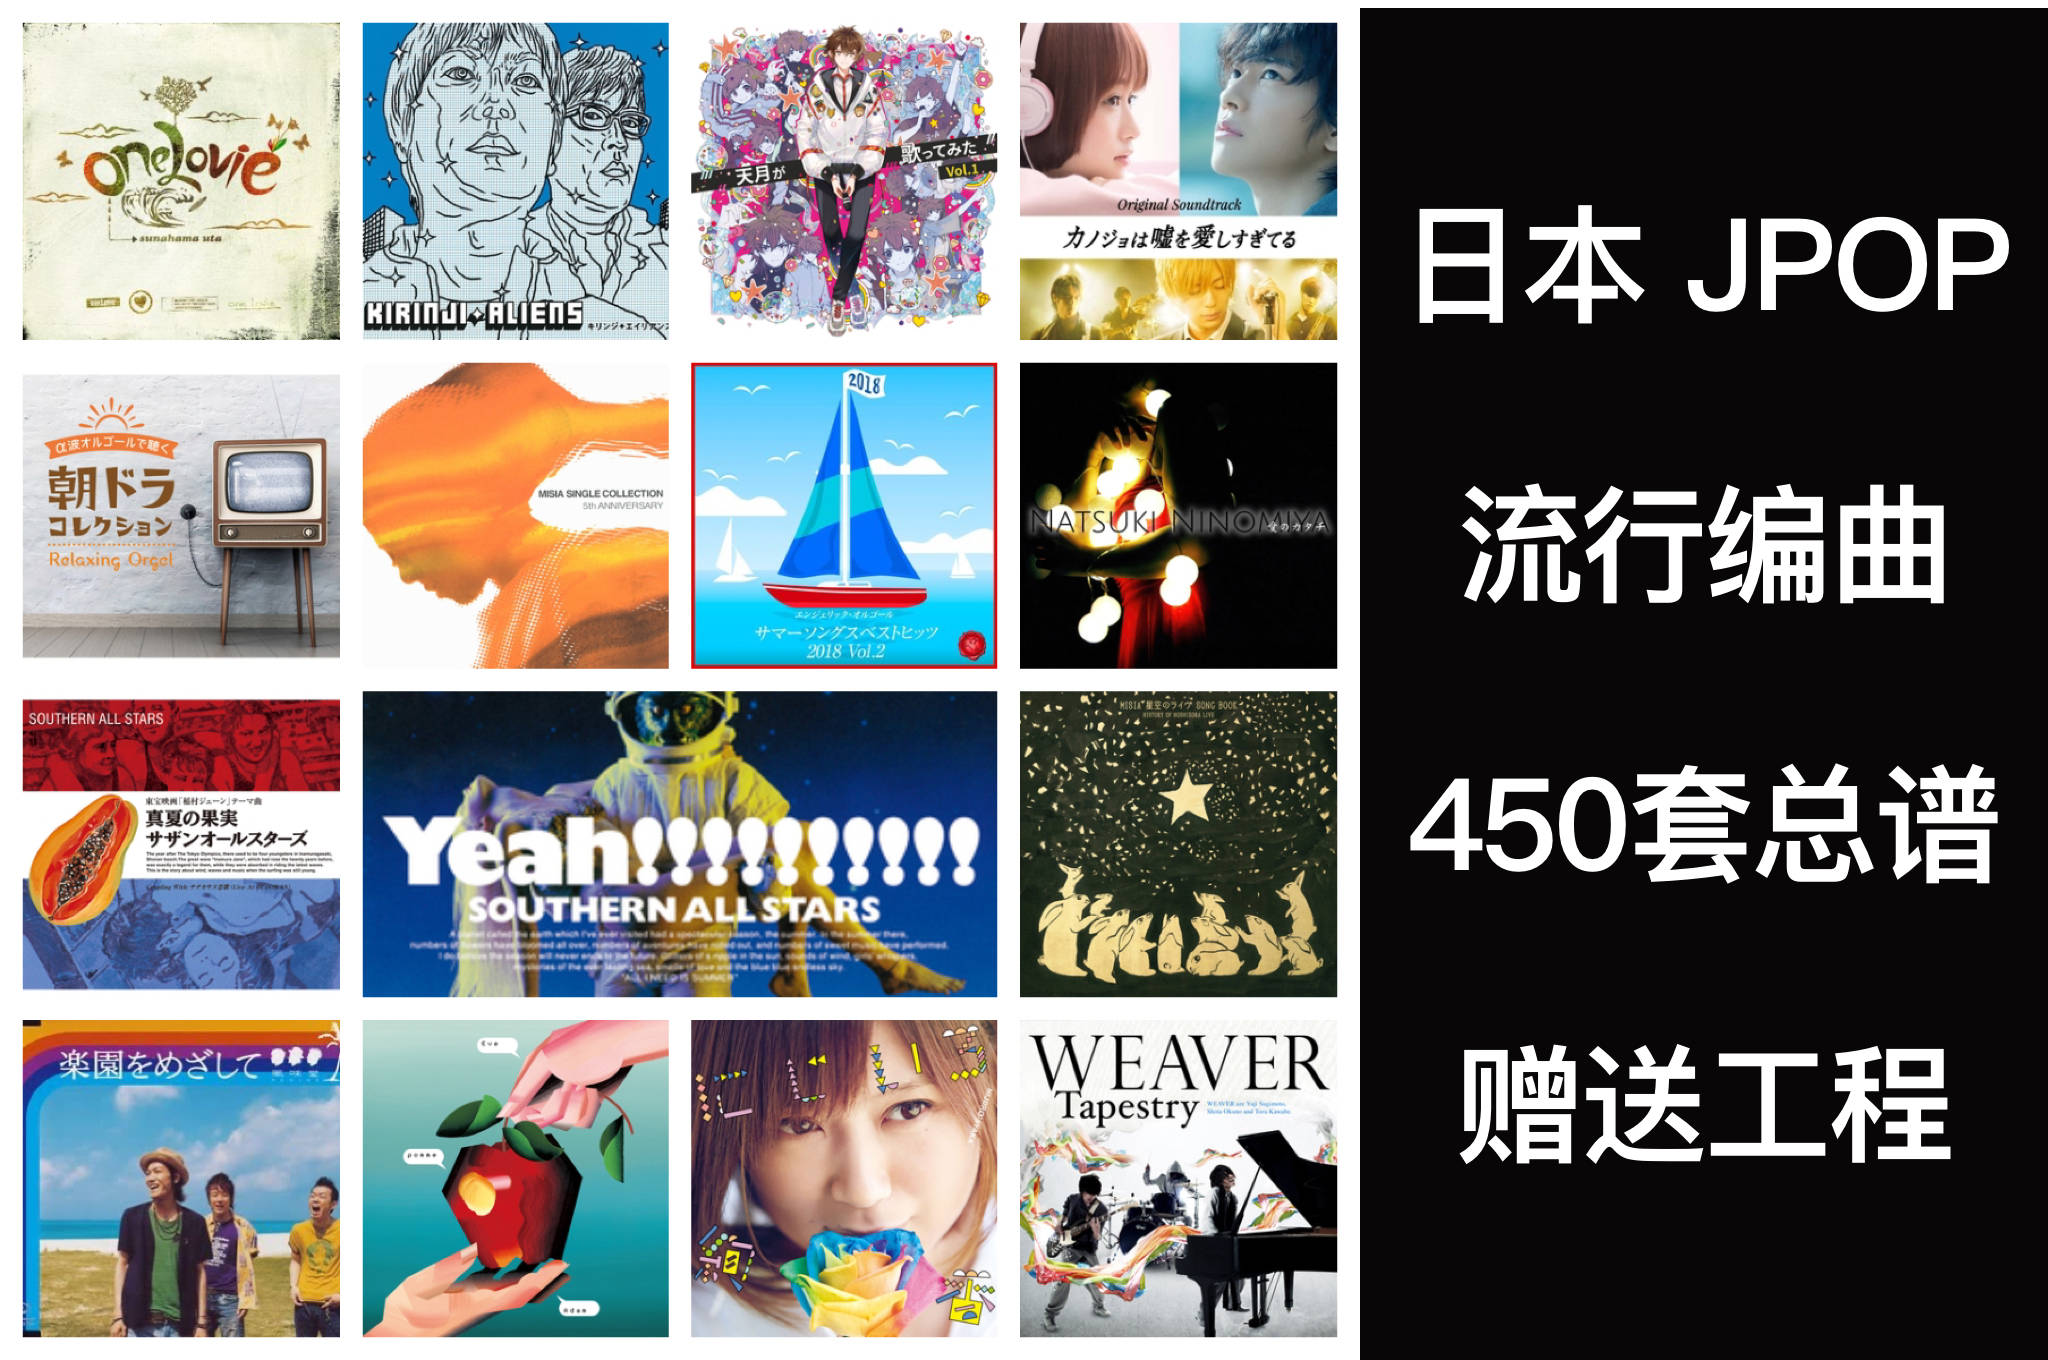 日本jop流行编曲总谱450套目录 含部分工程 国语流行编曲工程 Song May Wanted